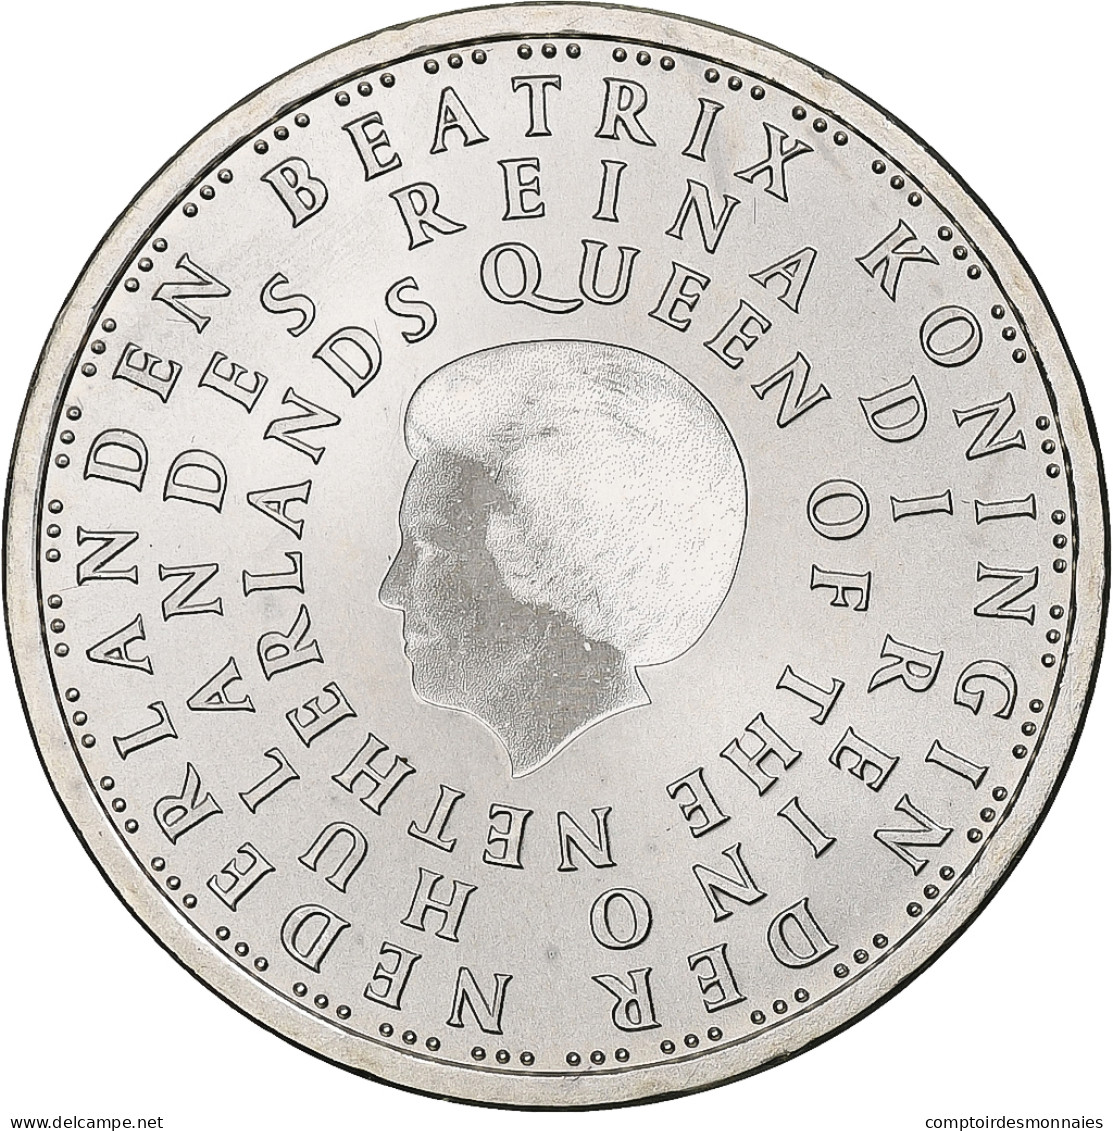 Pays-Bas, 5 Euro, 2004, Utrecht, SPL, Argent, KM:253 - Niederlande